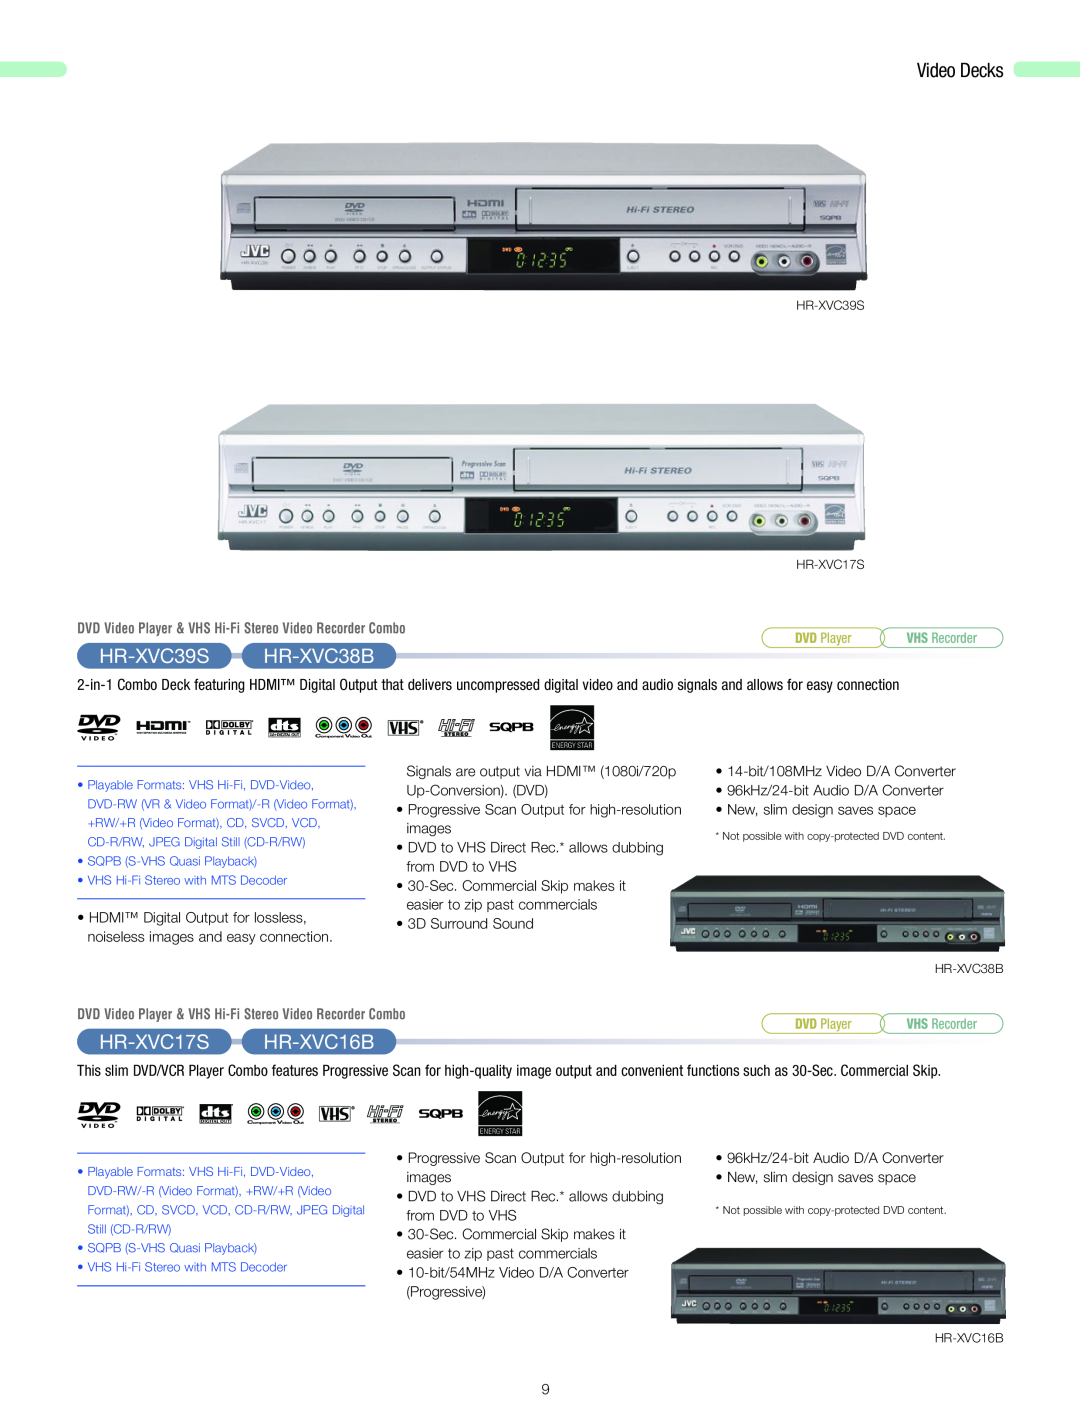 JVC 2006 HR-XVC39SHR-XVC38B, HR-XVC17SHR-XVC16B, DVD Video Player & VHS Hi-Fi Stereo Video Recorder Combo, DVD Player 